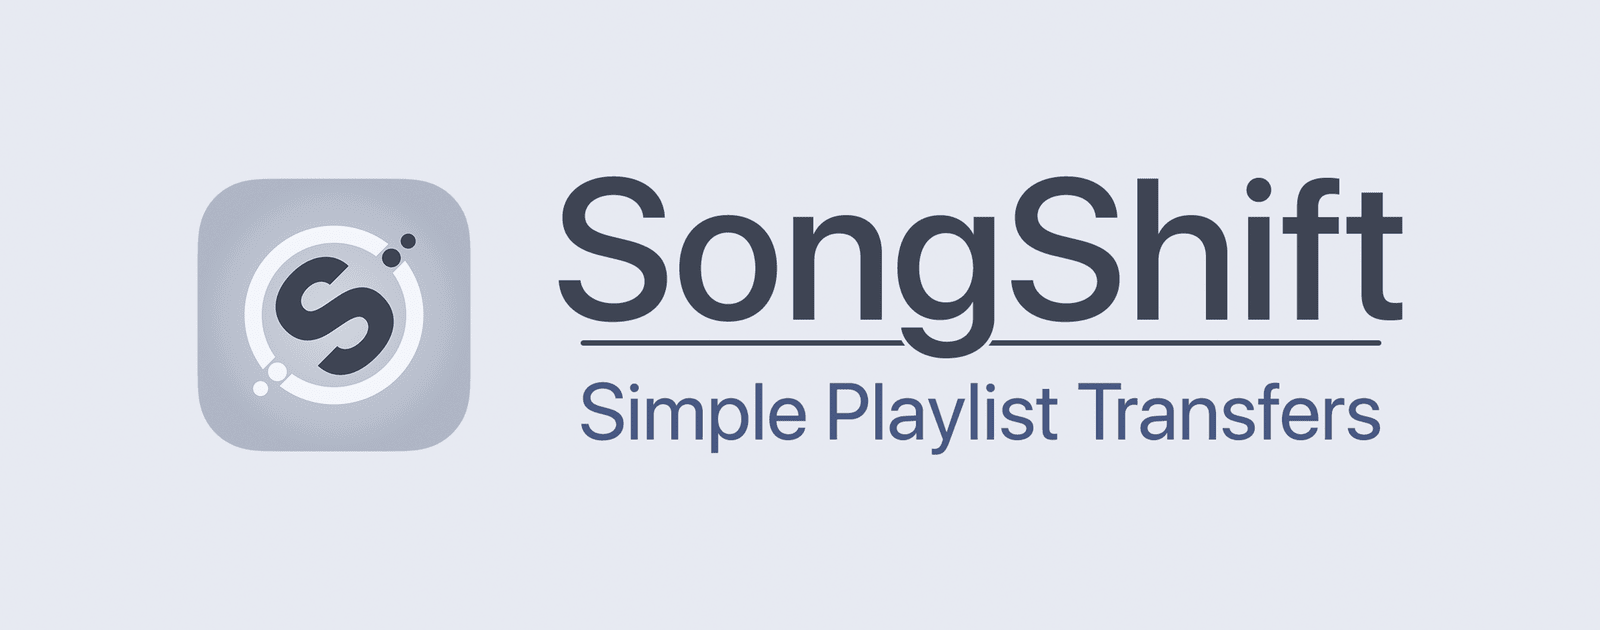 SongShift le permite transferir listas de reproducción de Apple Music a otros servicios